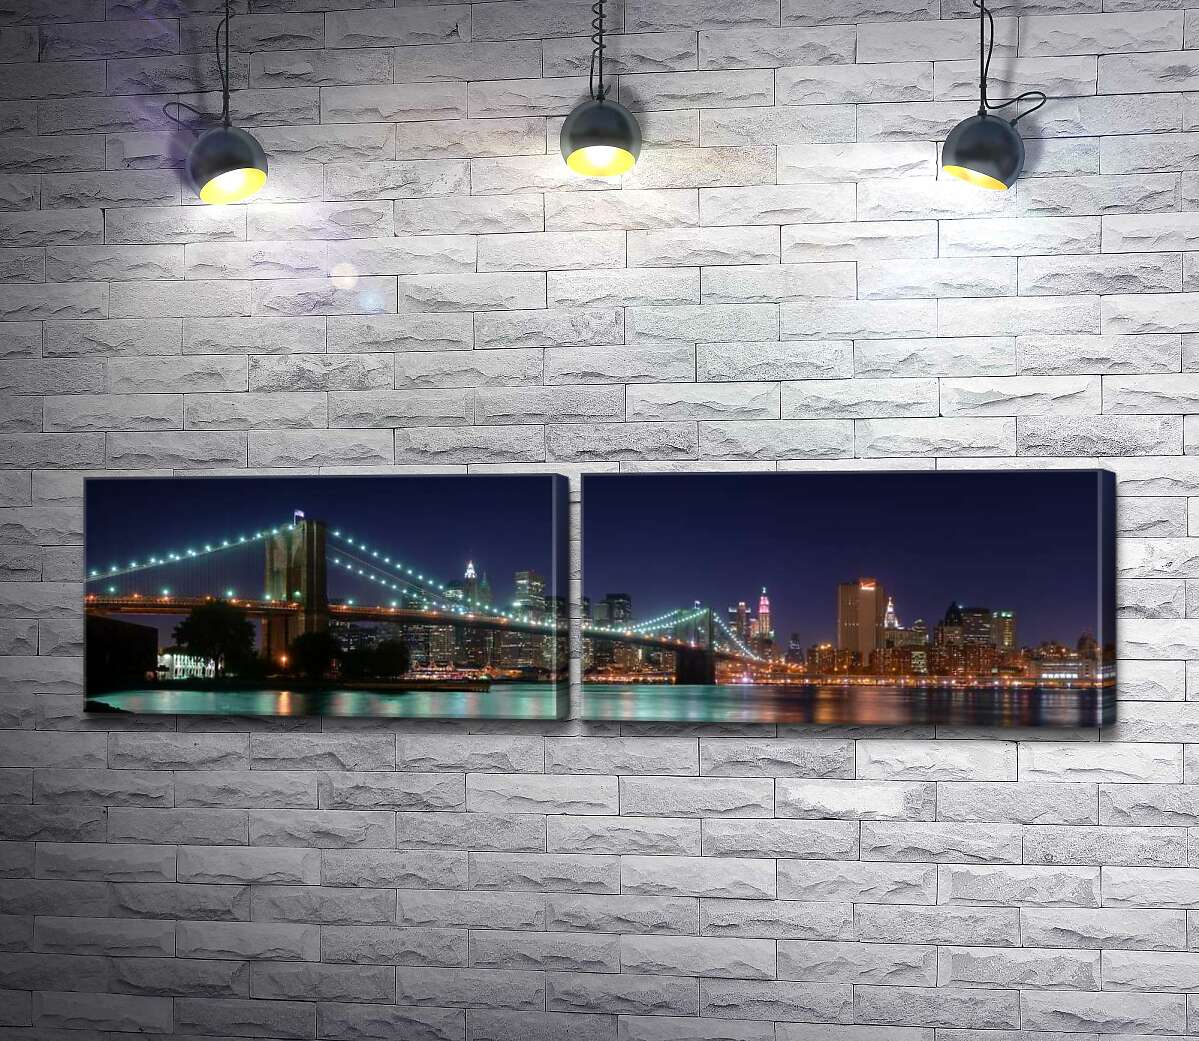 модульная картина Гирлянды фонарей Бруклинского моста (Brooklyn Bridge) отражаются в водах пролива Ист-ривер (East River)